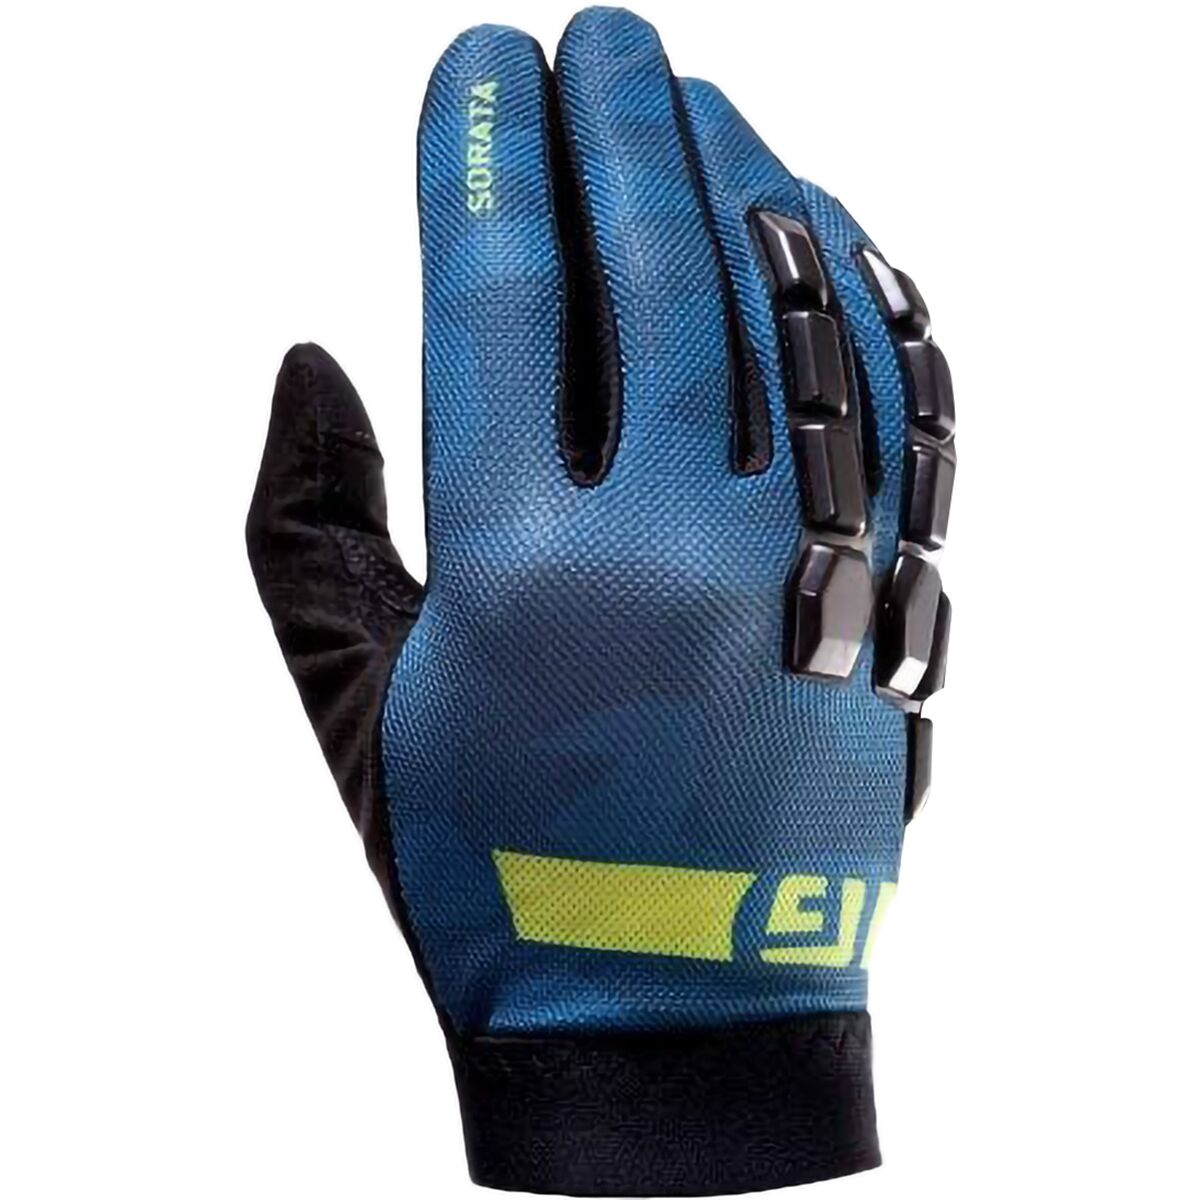 G-Form Sorata 2 Trail Glove - Men's